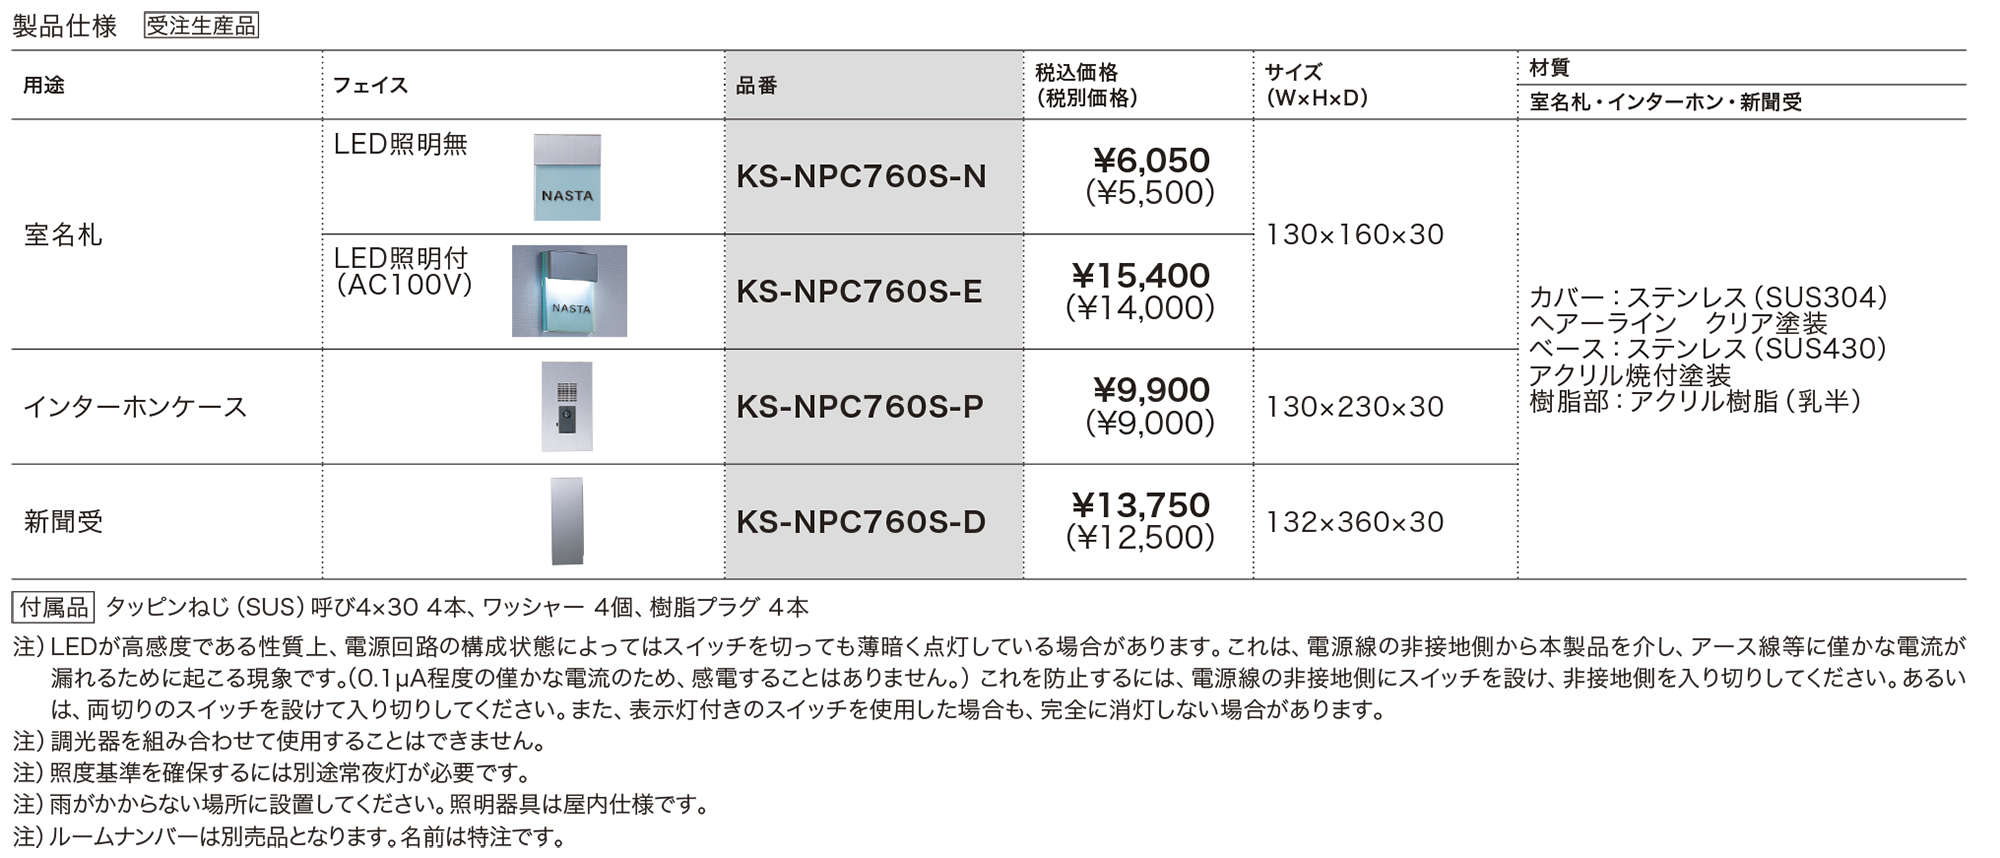 インターホンパネル KS-NPC760S | 表示・サイン | 製品情報 | 株式会社